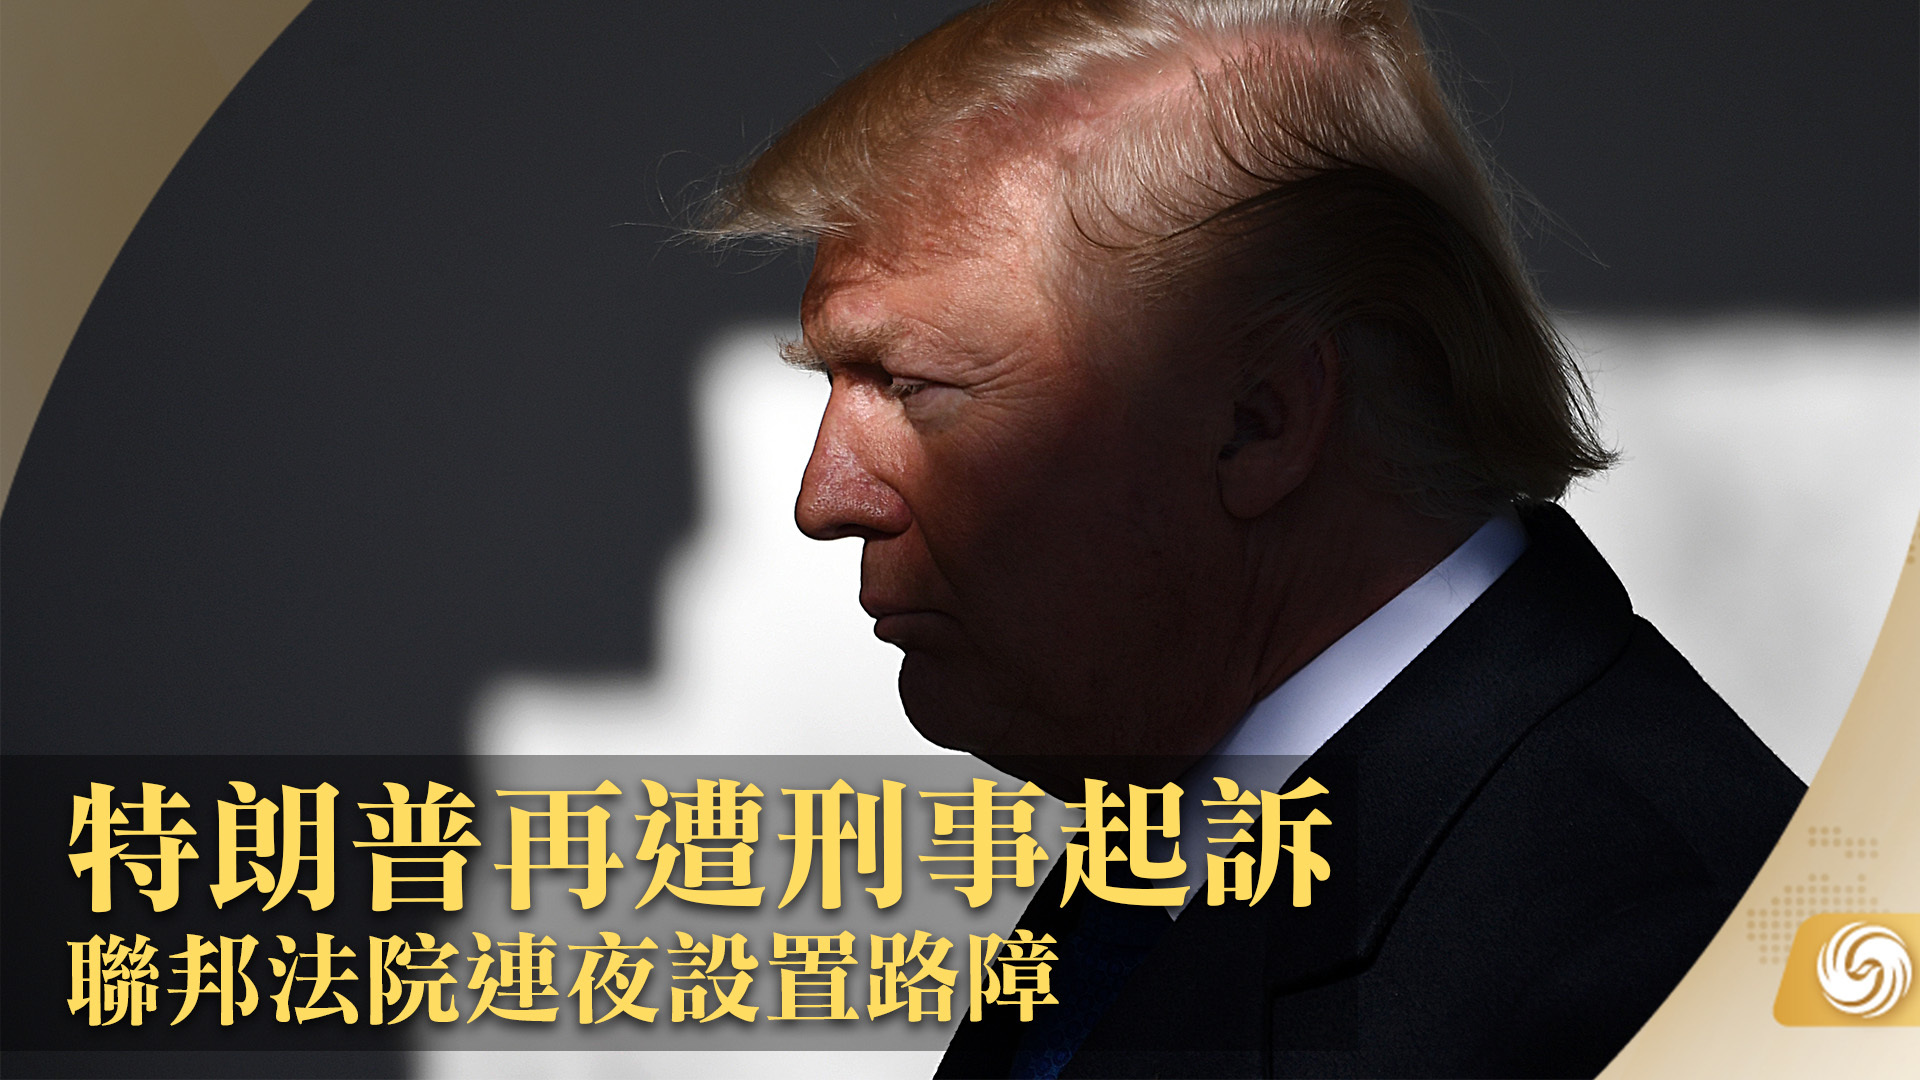 特朗普将被起诉 成美历史上第一位被刑控的前总统-综合新闻-蒙城华人网-蒙特利尔第一中文网-www.sinoquebec.com